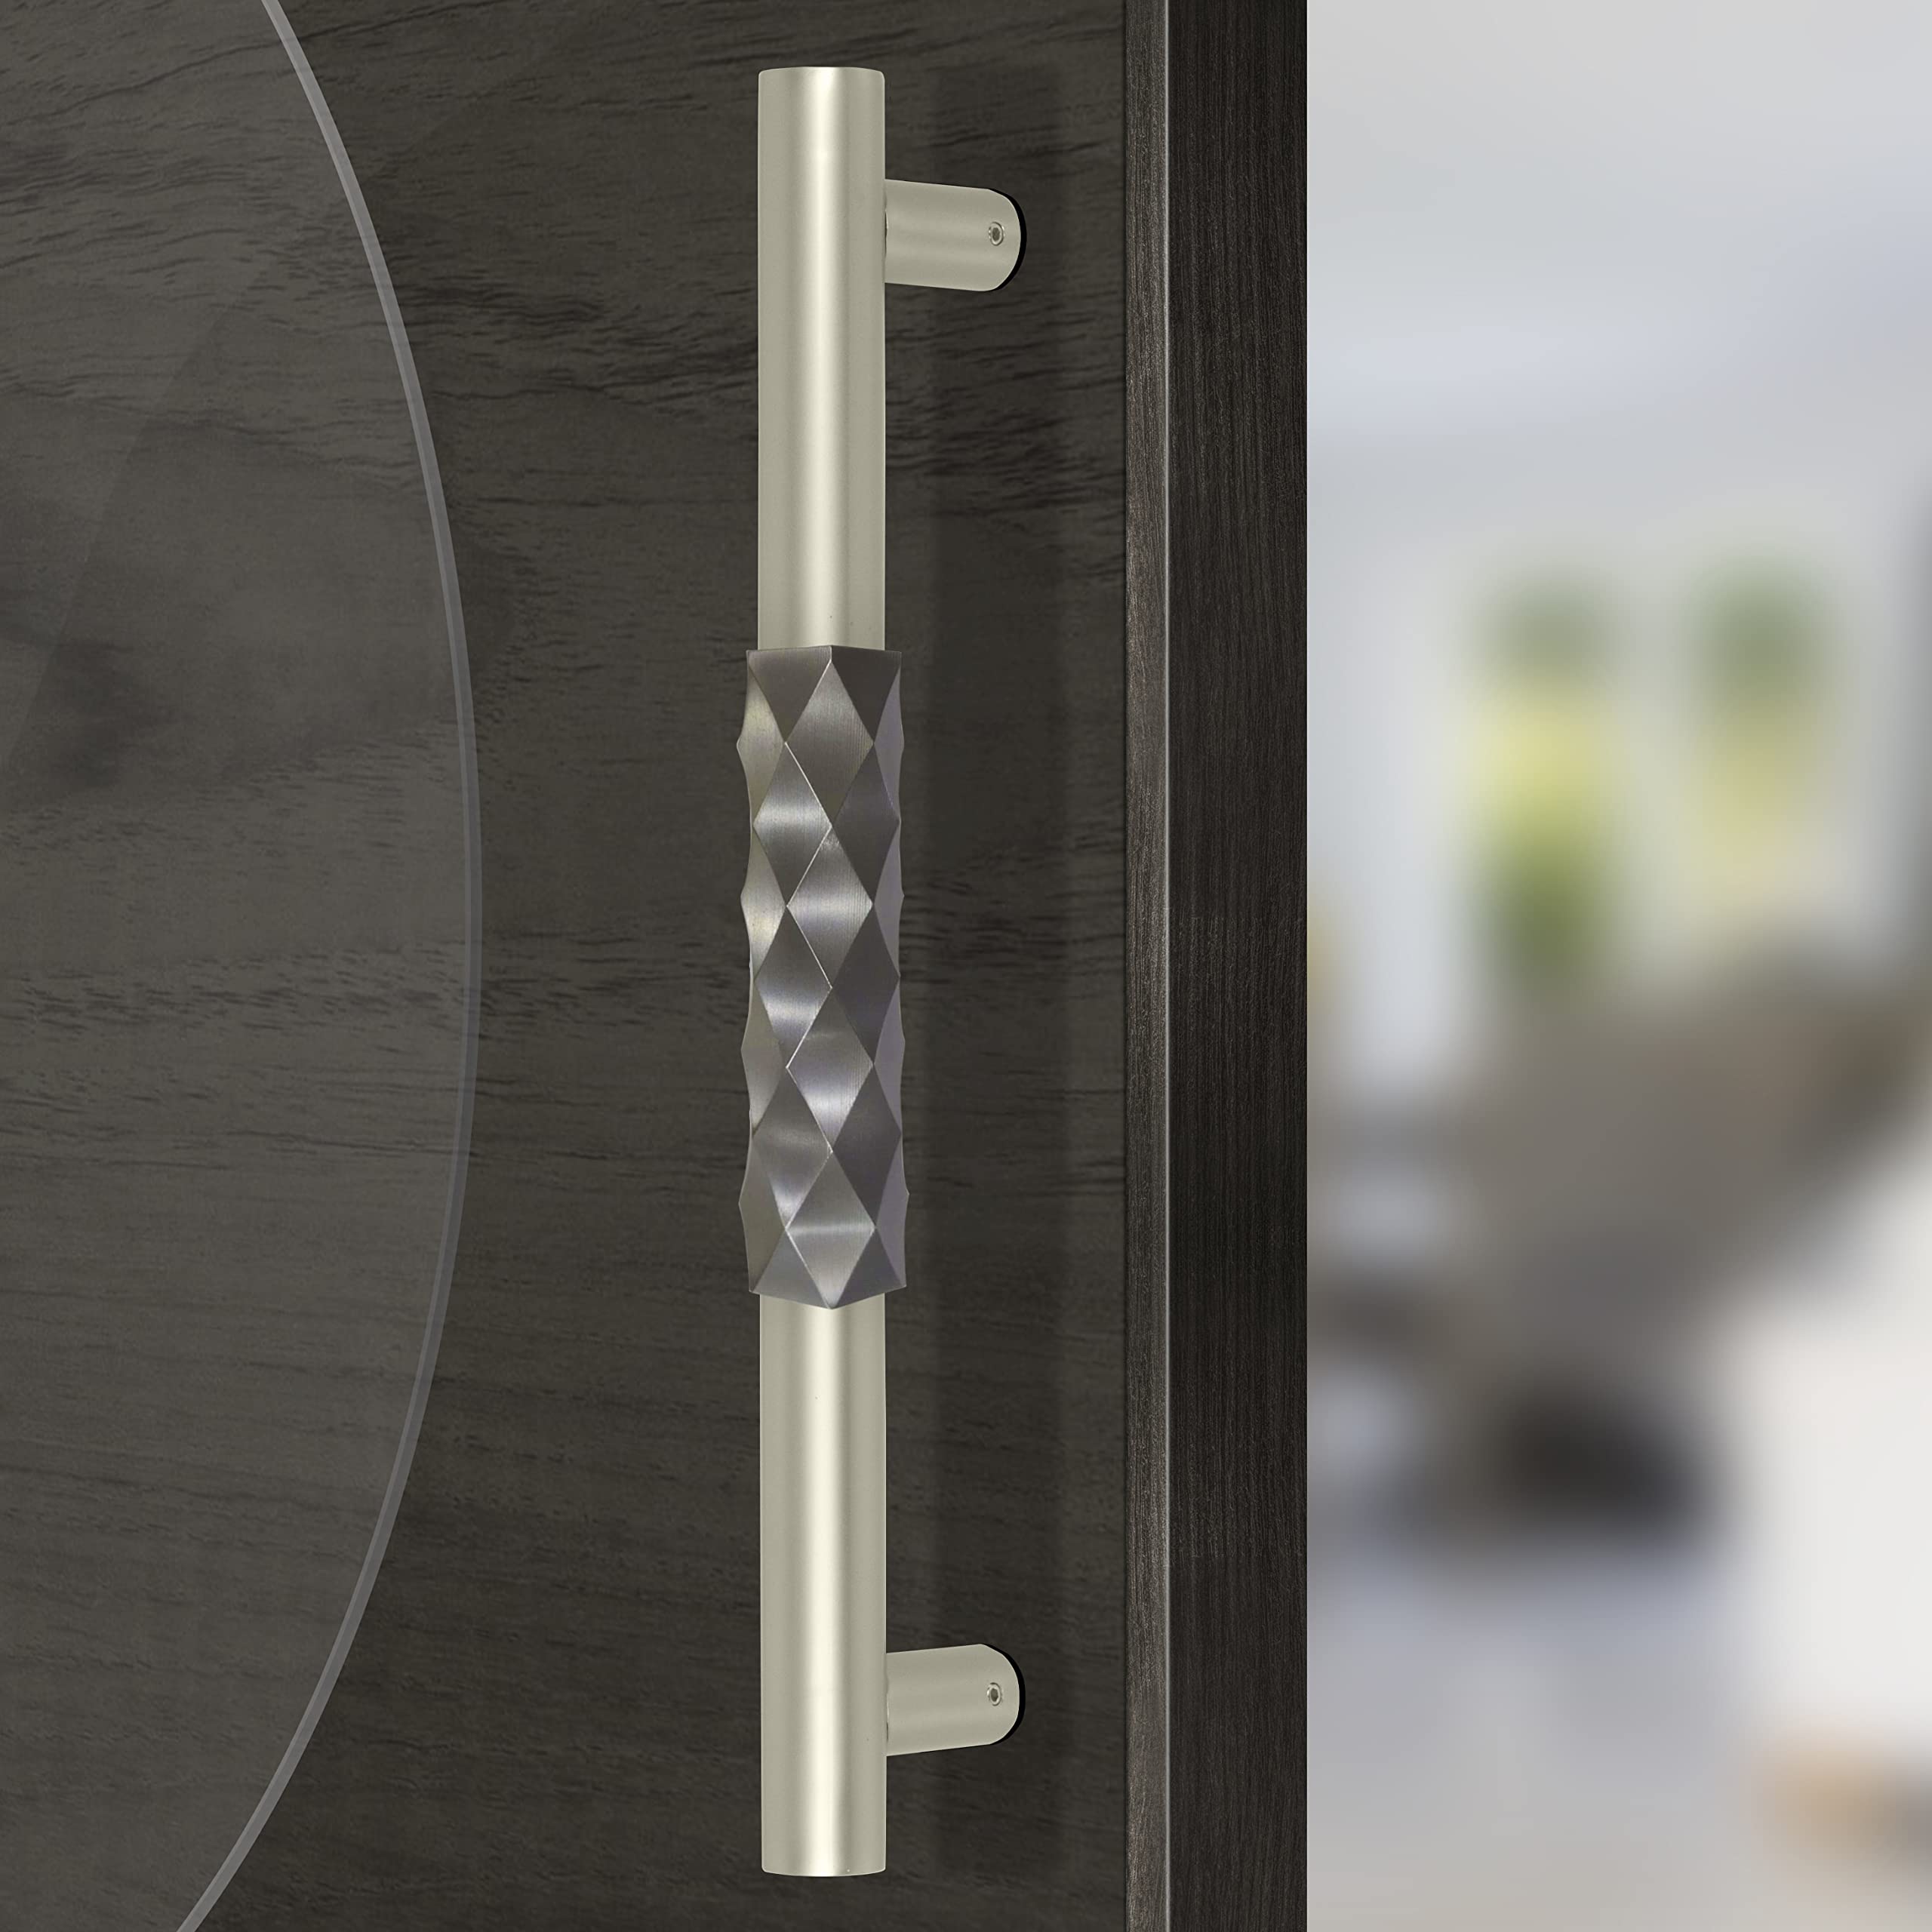 Plantex Aura Door Handle/Door & Home Decor/14 Inch Main Door Handle/Door Pull Push Handle – Pack of 1 (299,Satin White & Grey Finish)